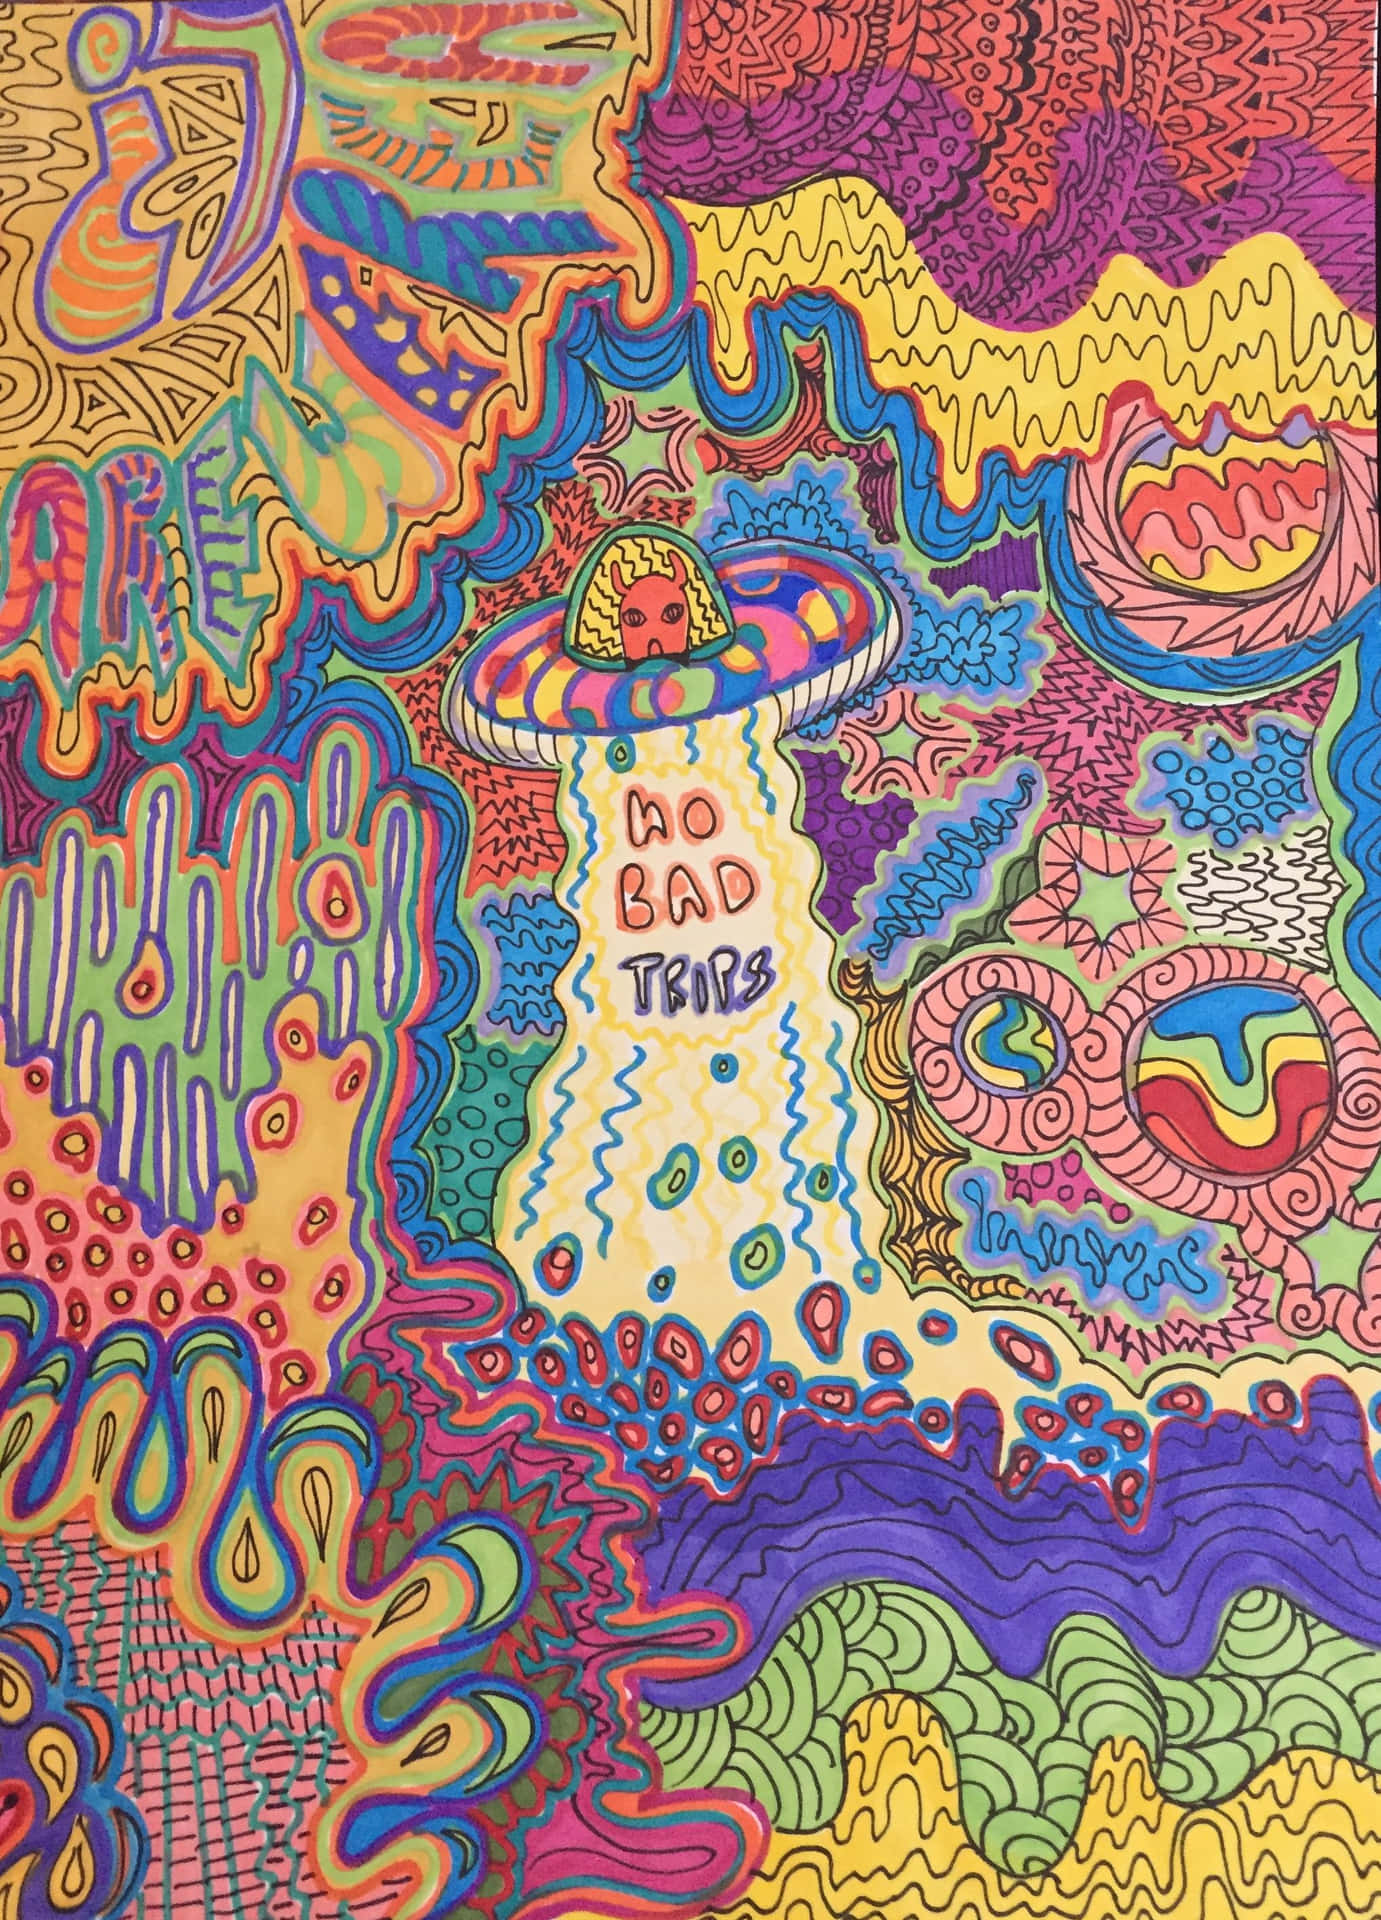 Einepsychedelische Vision Eines Freiheitsliebenden, Trippigen Hippies. Wallpaper